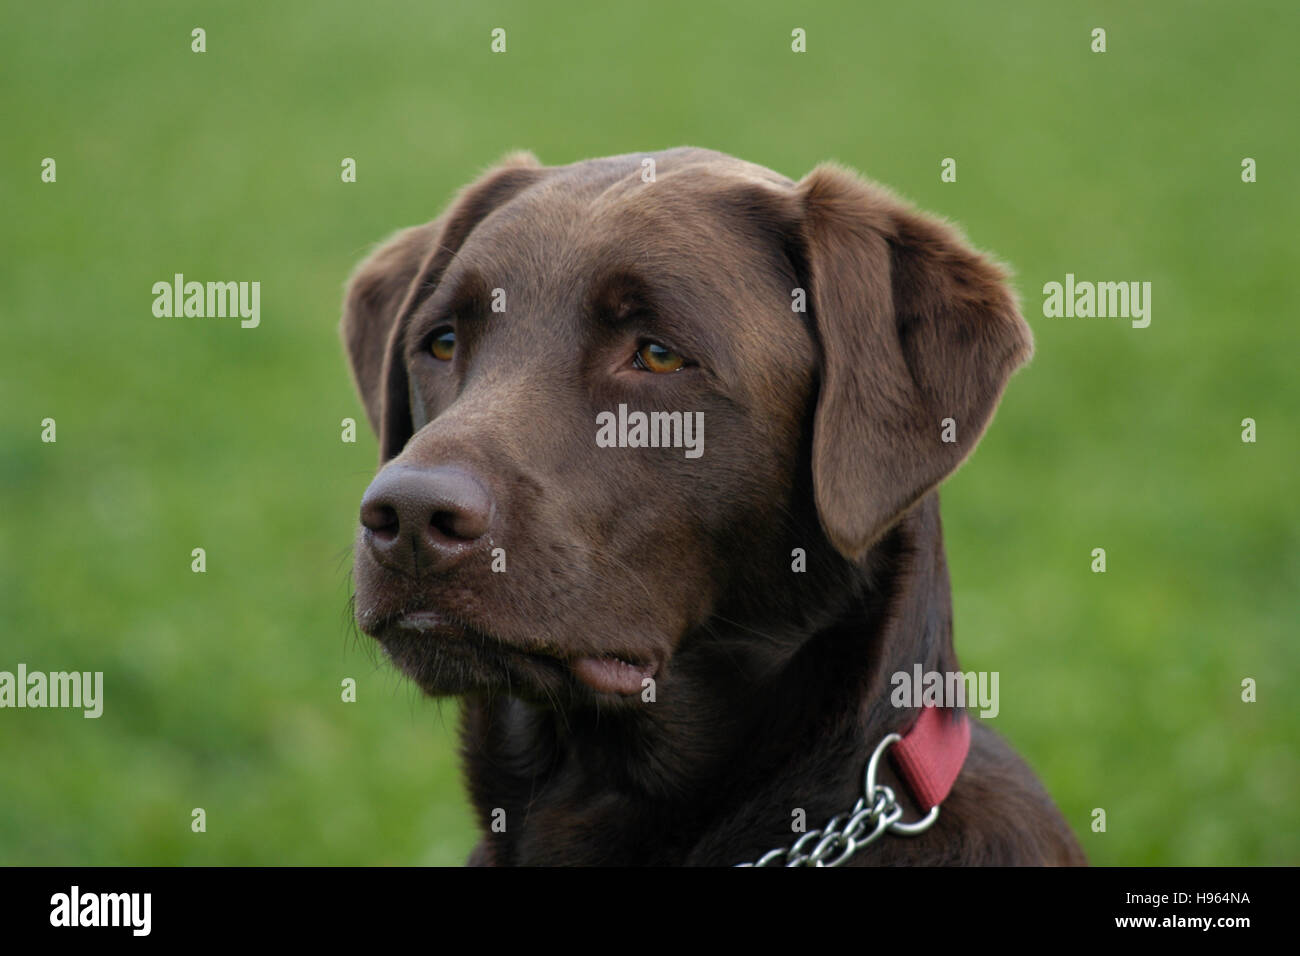 Chocolate Labrador Retriever portrait Stock Photo